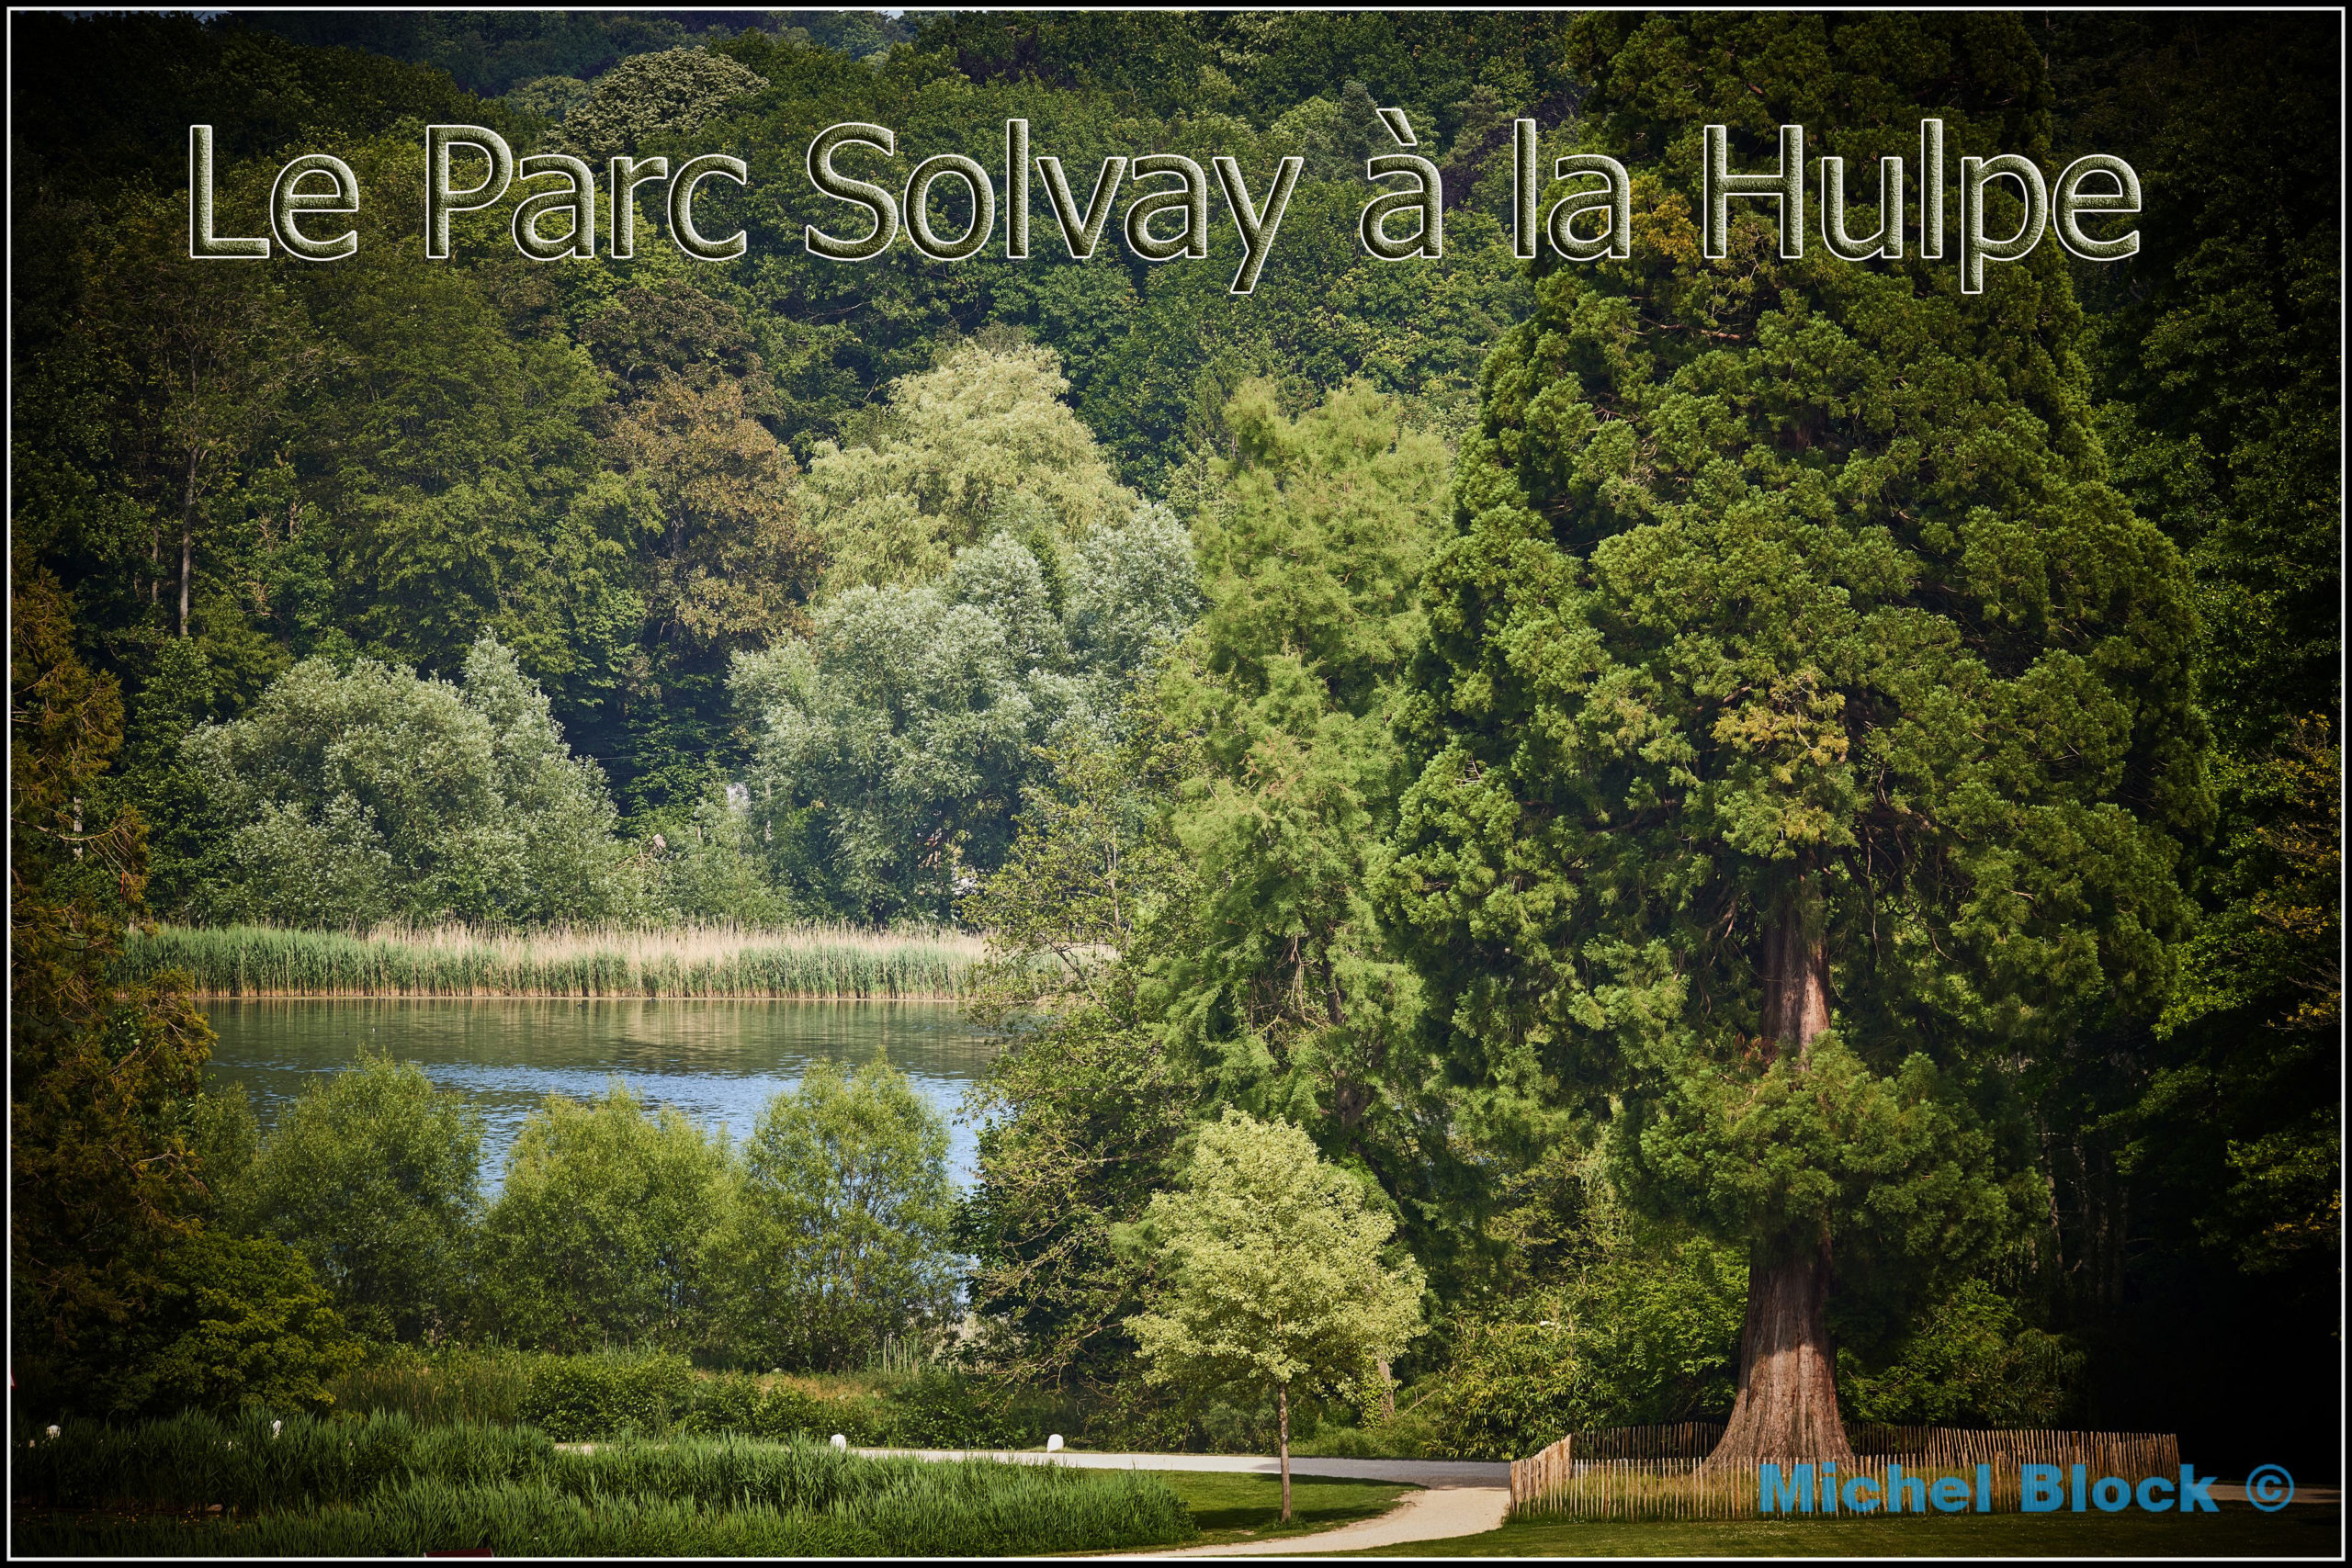 Le Parc de Solvay à la Hulpe 06/2021